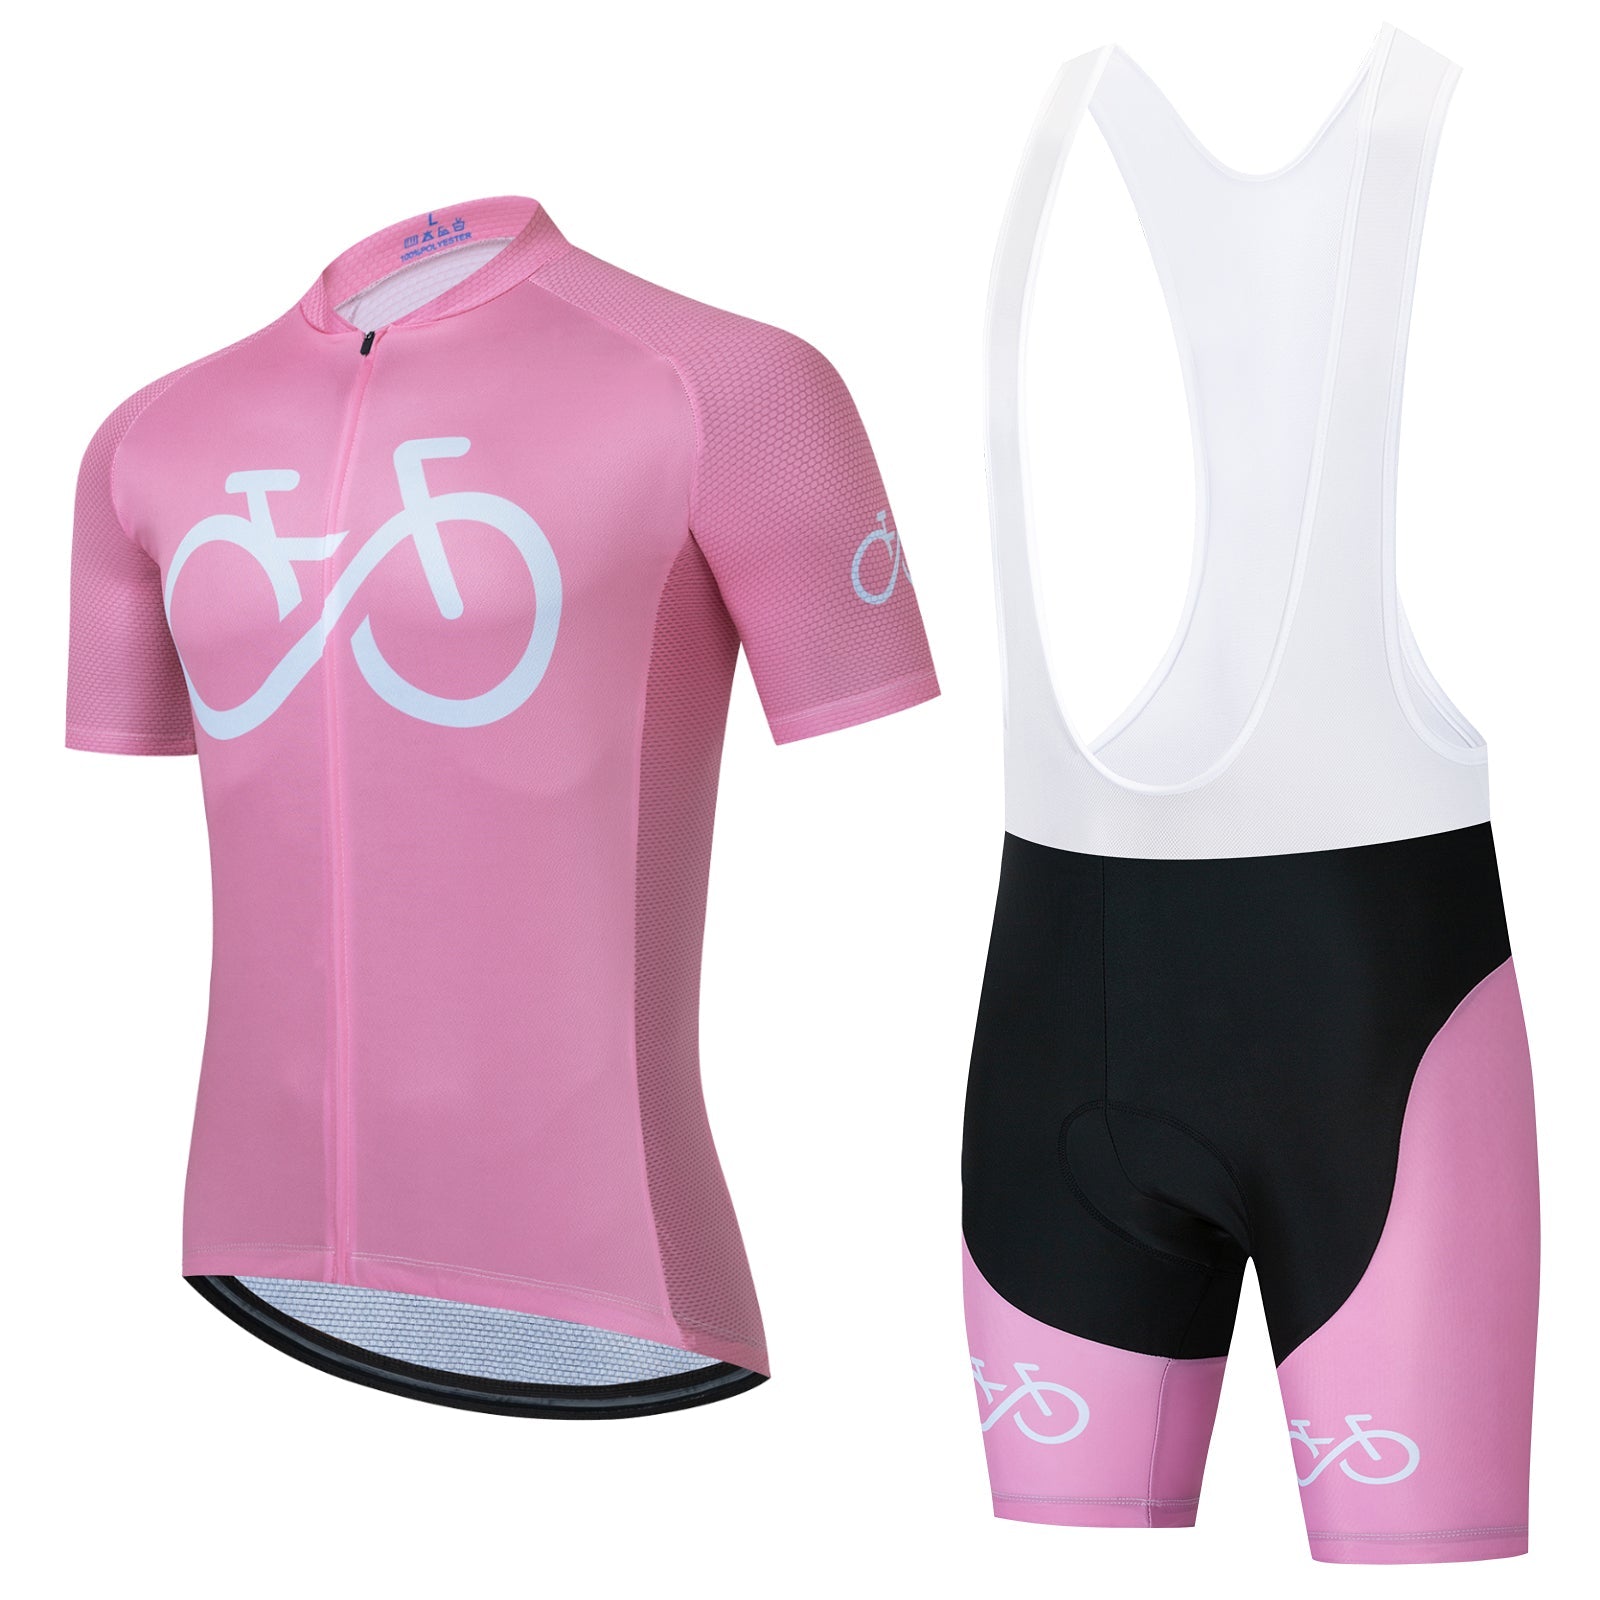 Set di maglie da ciclismo rosa con logo bici 